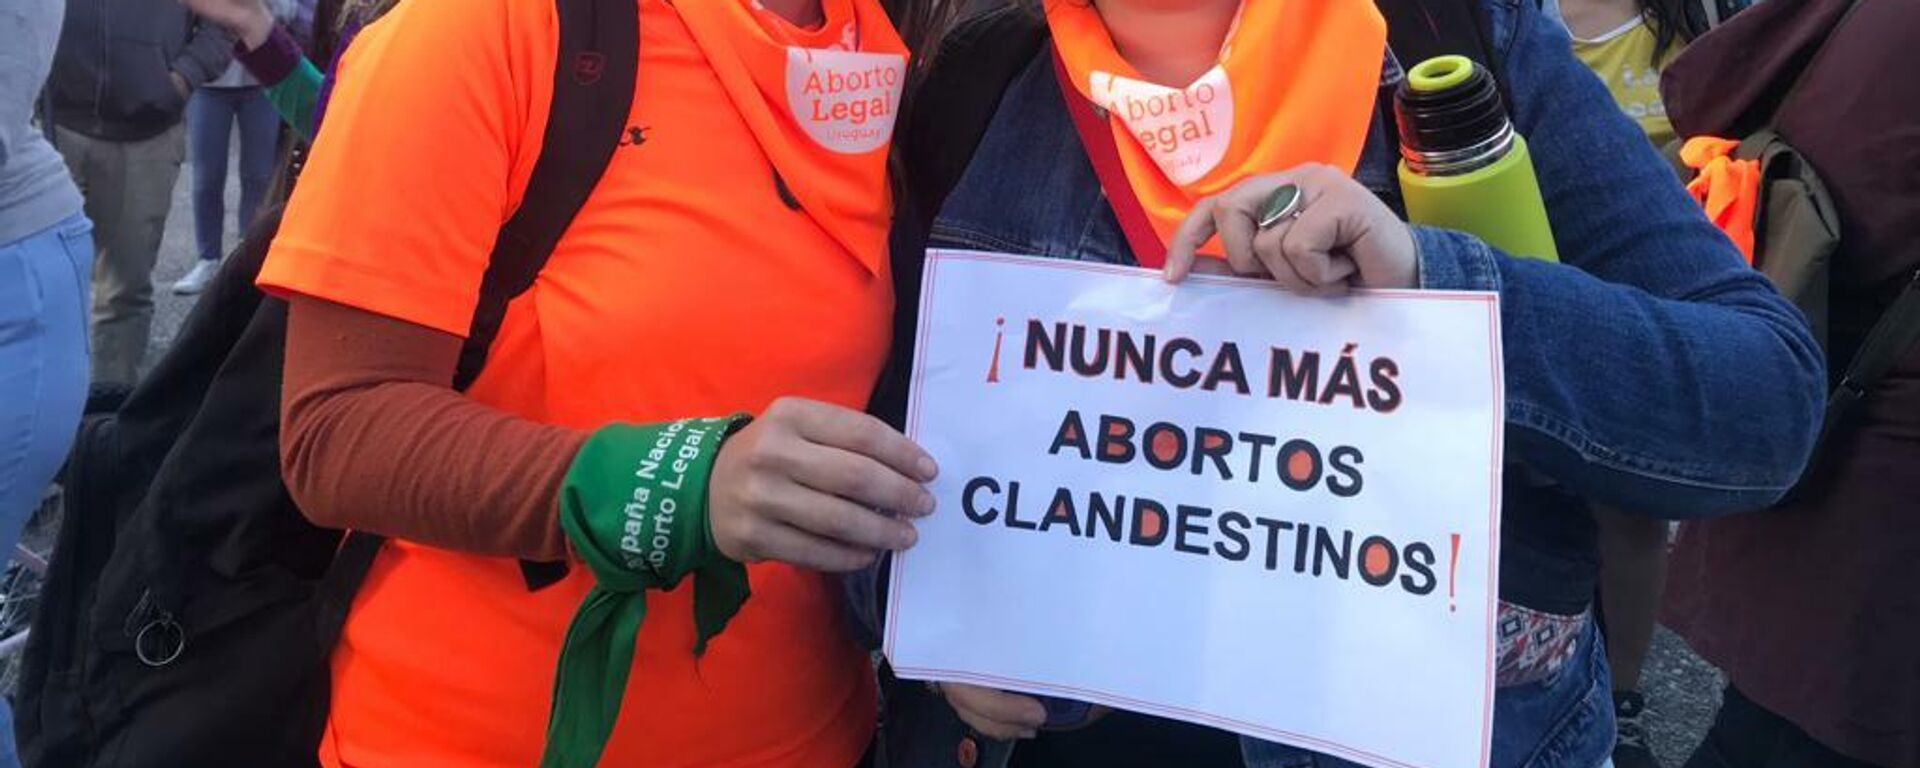 Manifestantes en Uruguay en la convocatoria en defensa de la Ley Voluntaria de Interrupción al Embarazo - Sputnik Mundo, 1920, 11.11.2021